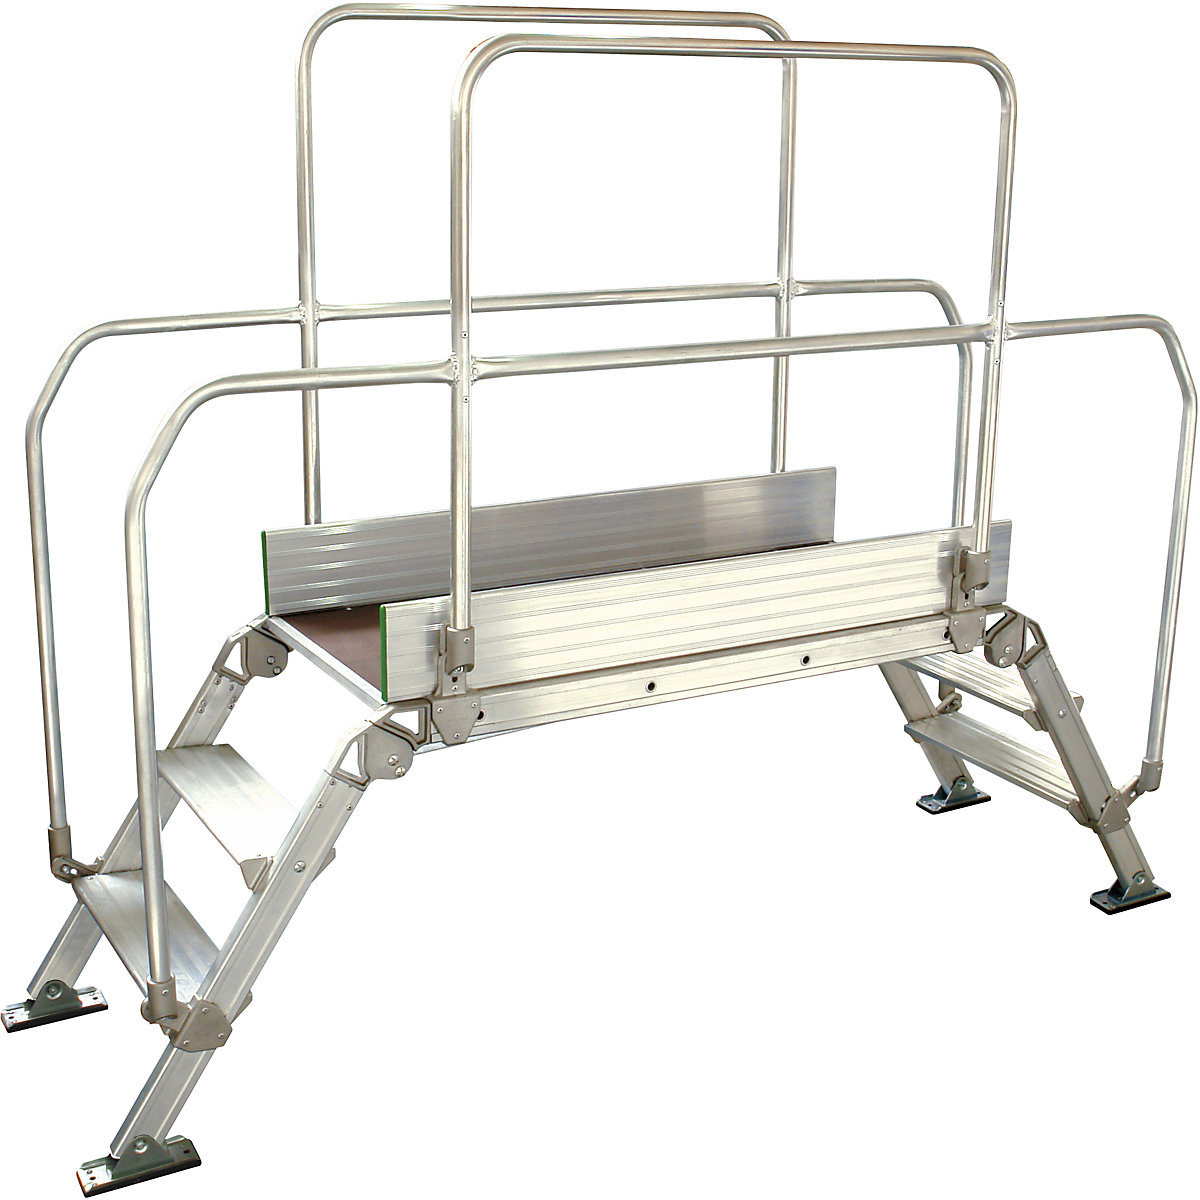 Aluminijasta premostitvena lestev, skupna obremenitev 200 kg, 3 stopnice, podest 1200 x 530 mm